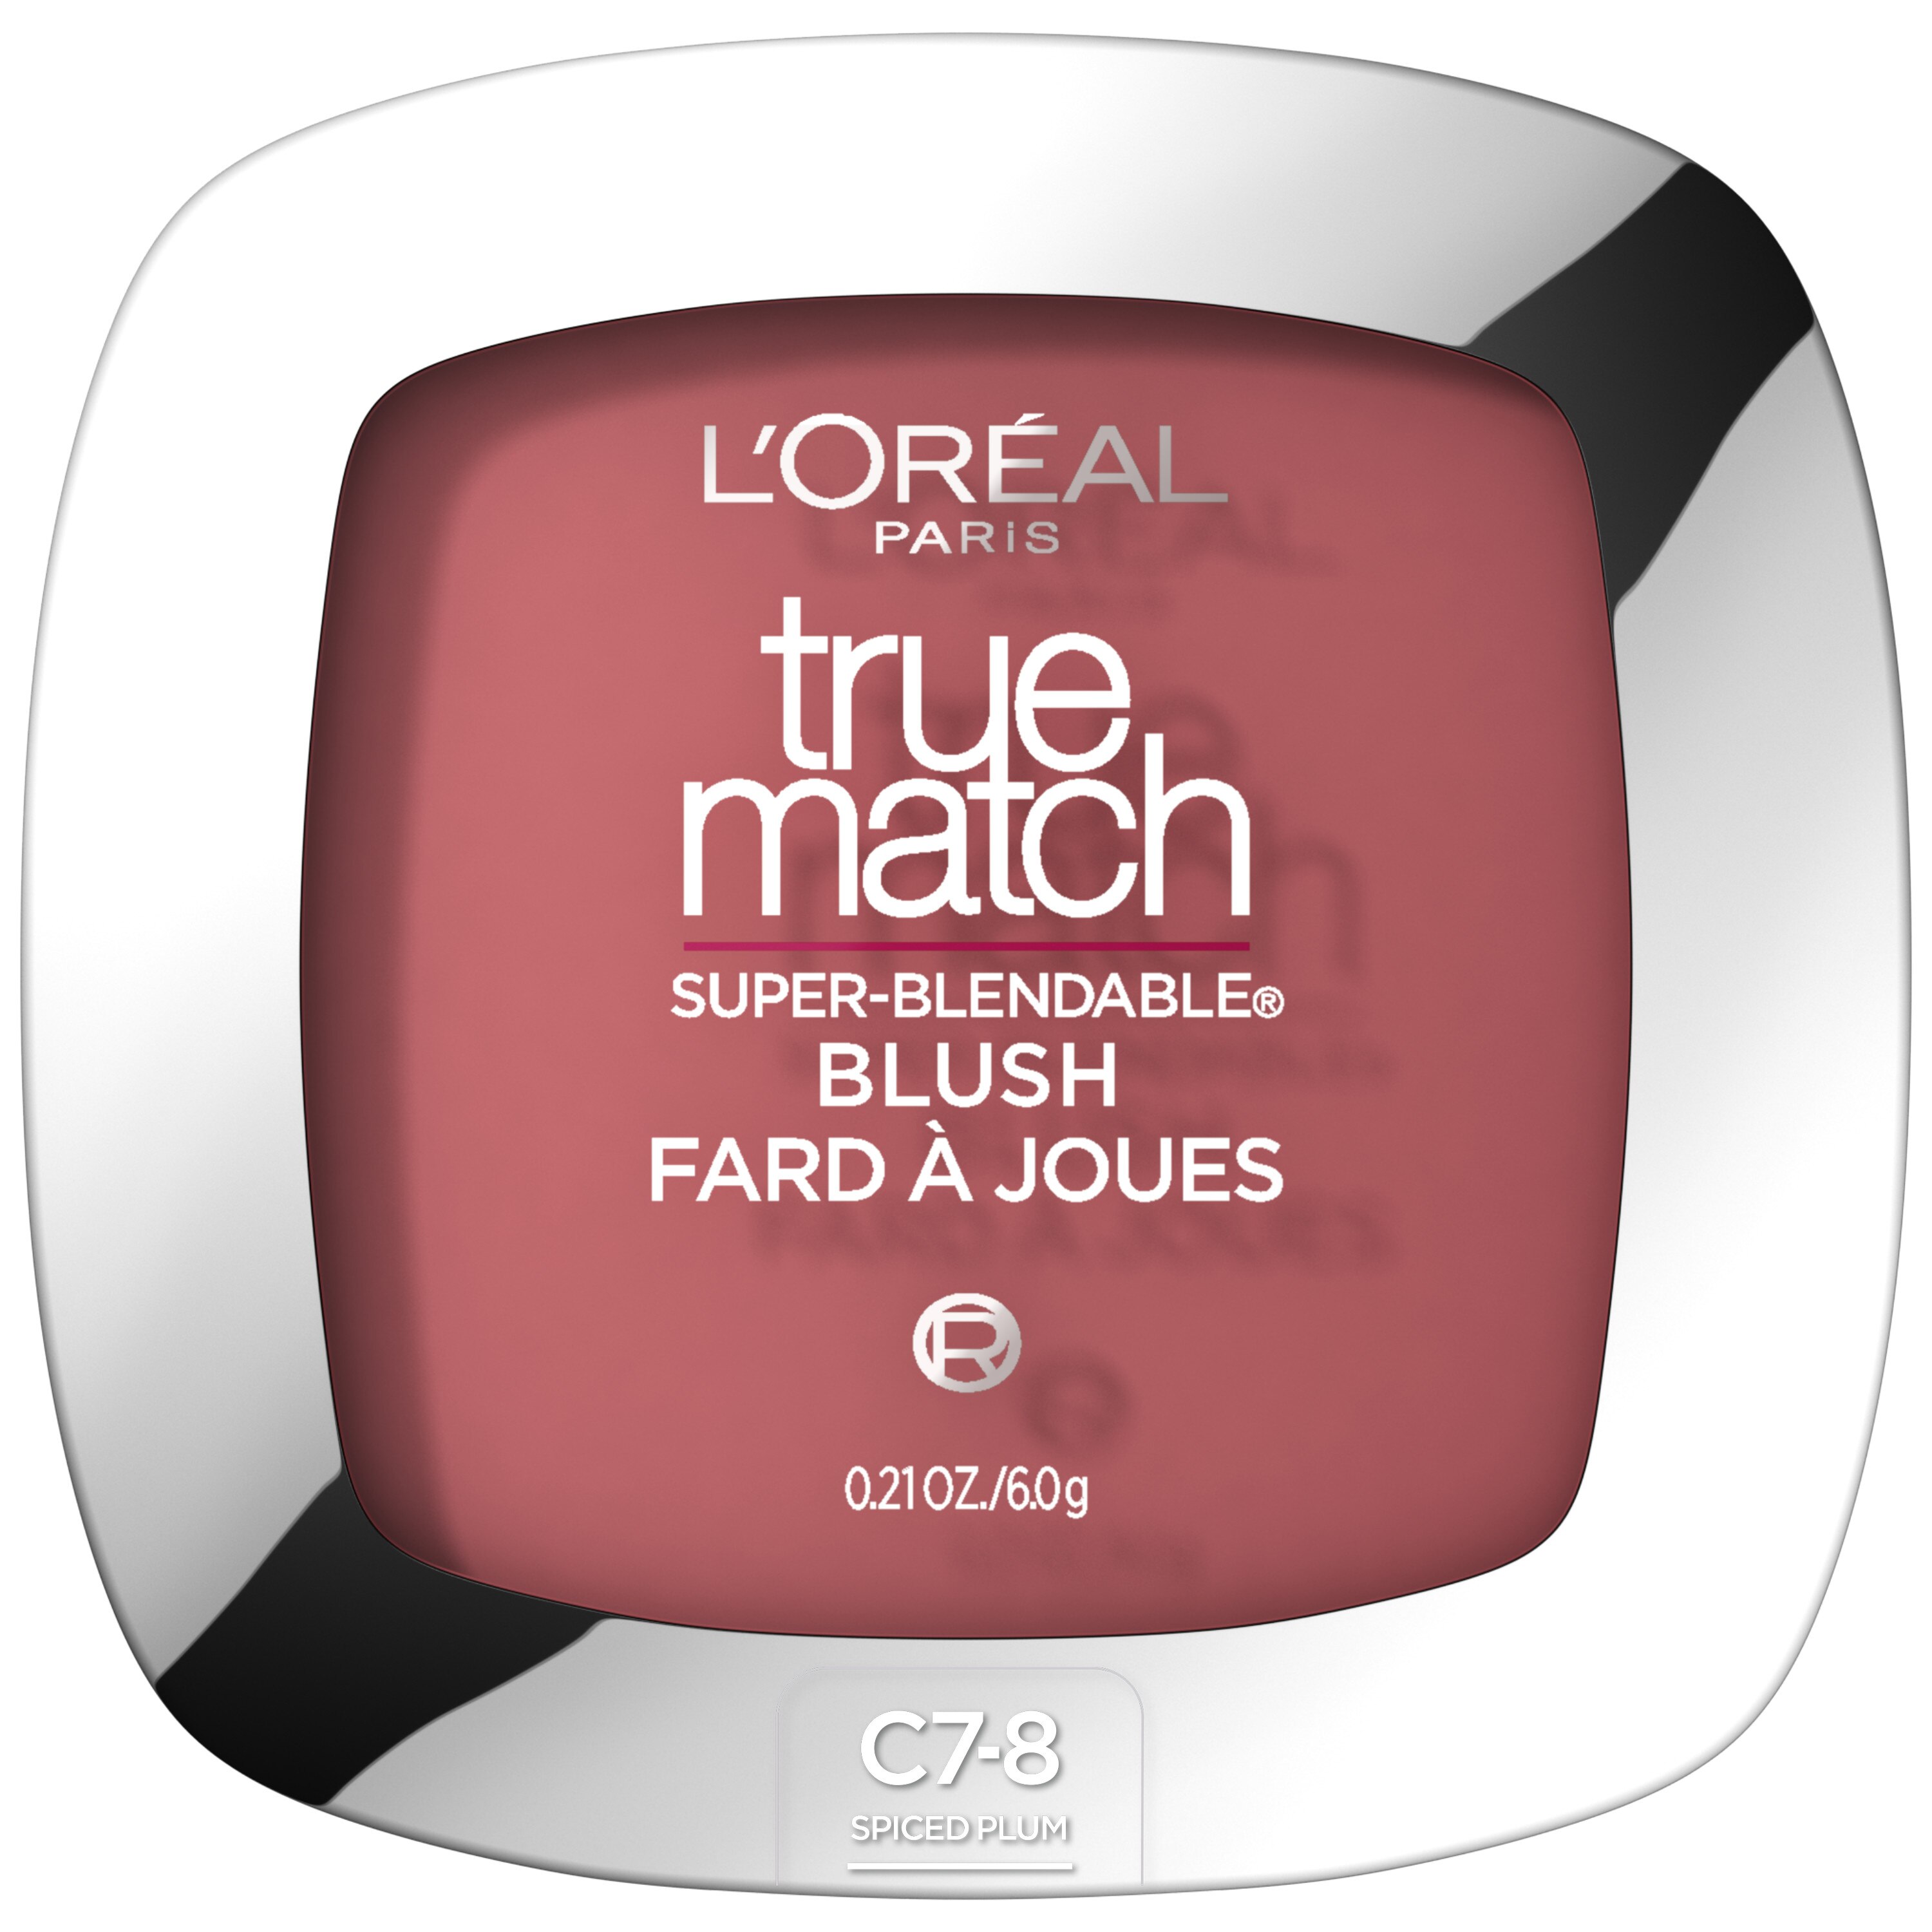 L'Oreal Paris True Match Super-Blendable Blush, C7-8 Spiced Plum , CVS